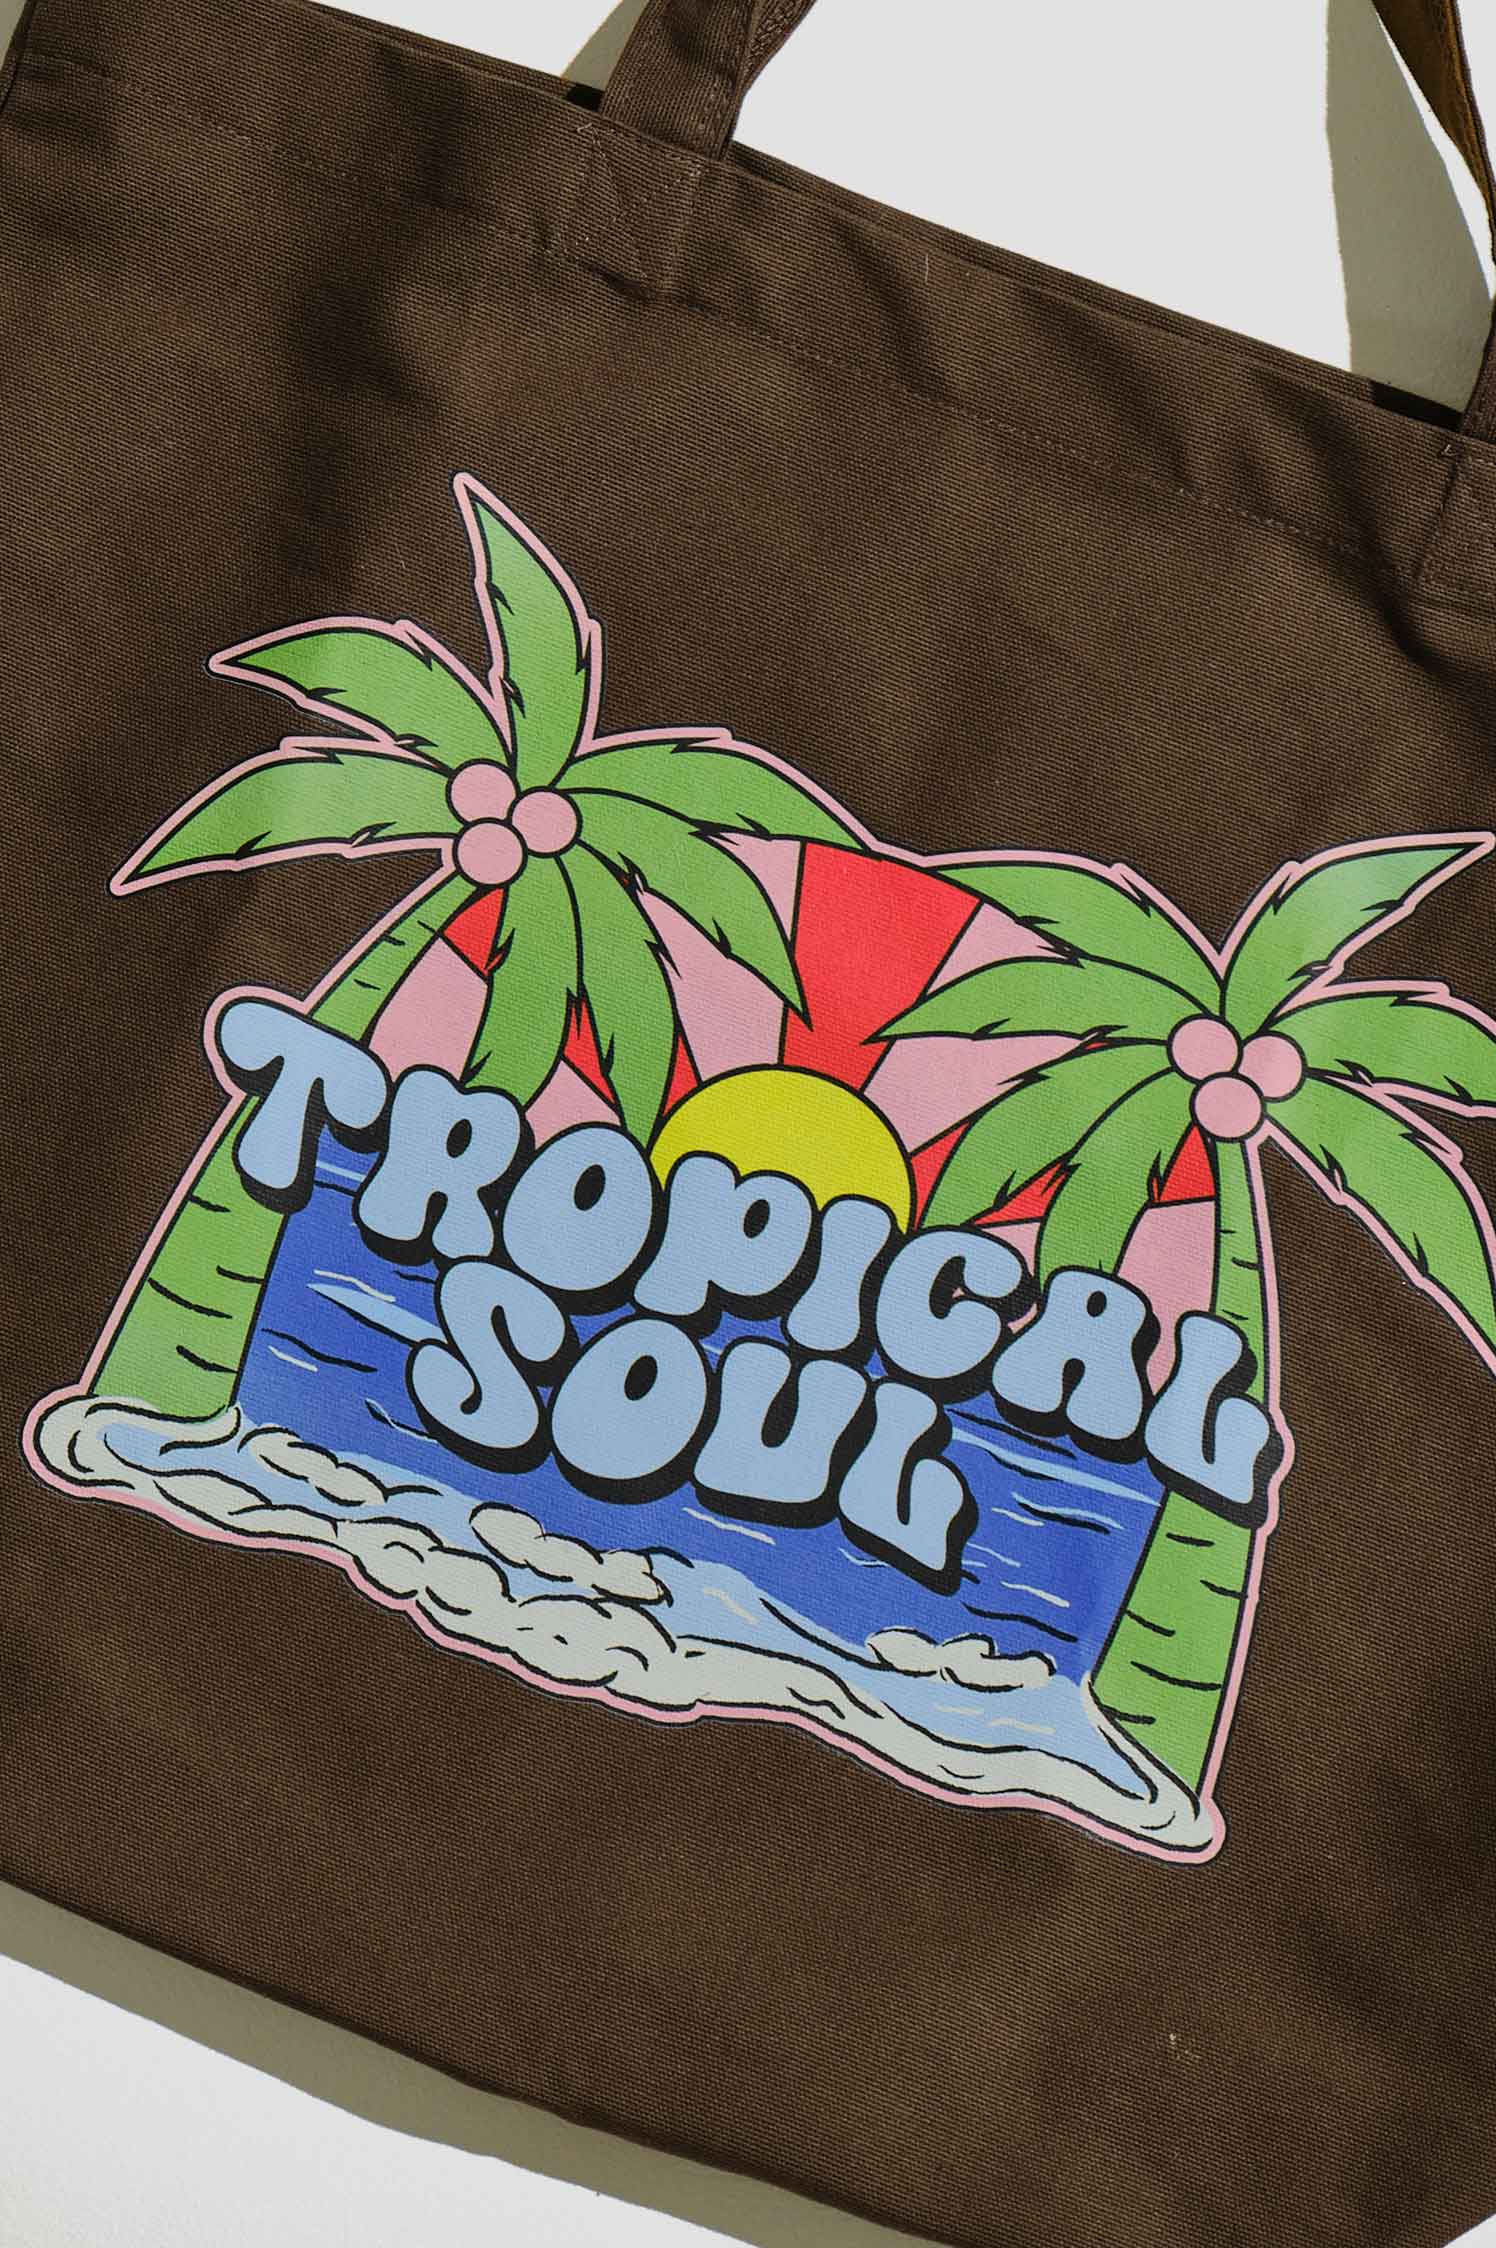 Tote Bag / Tropical Soul